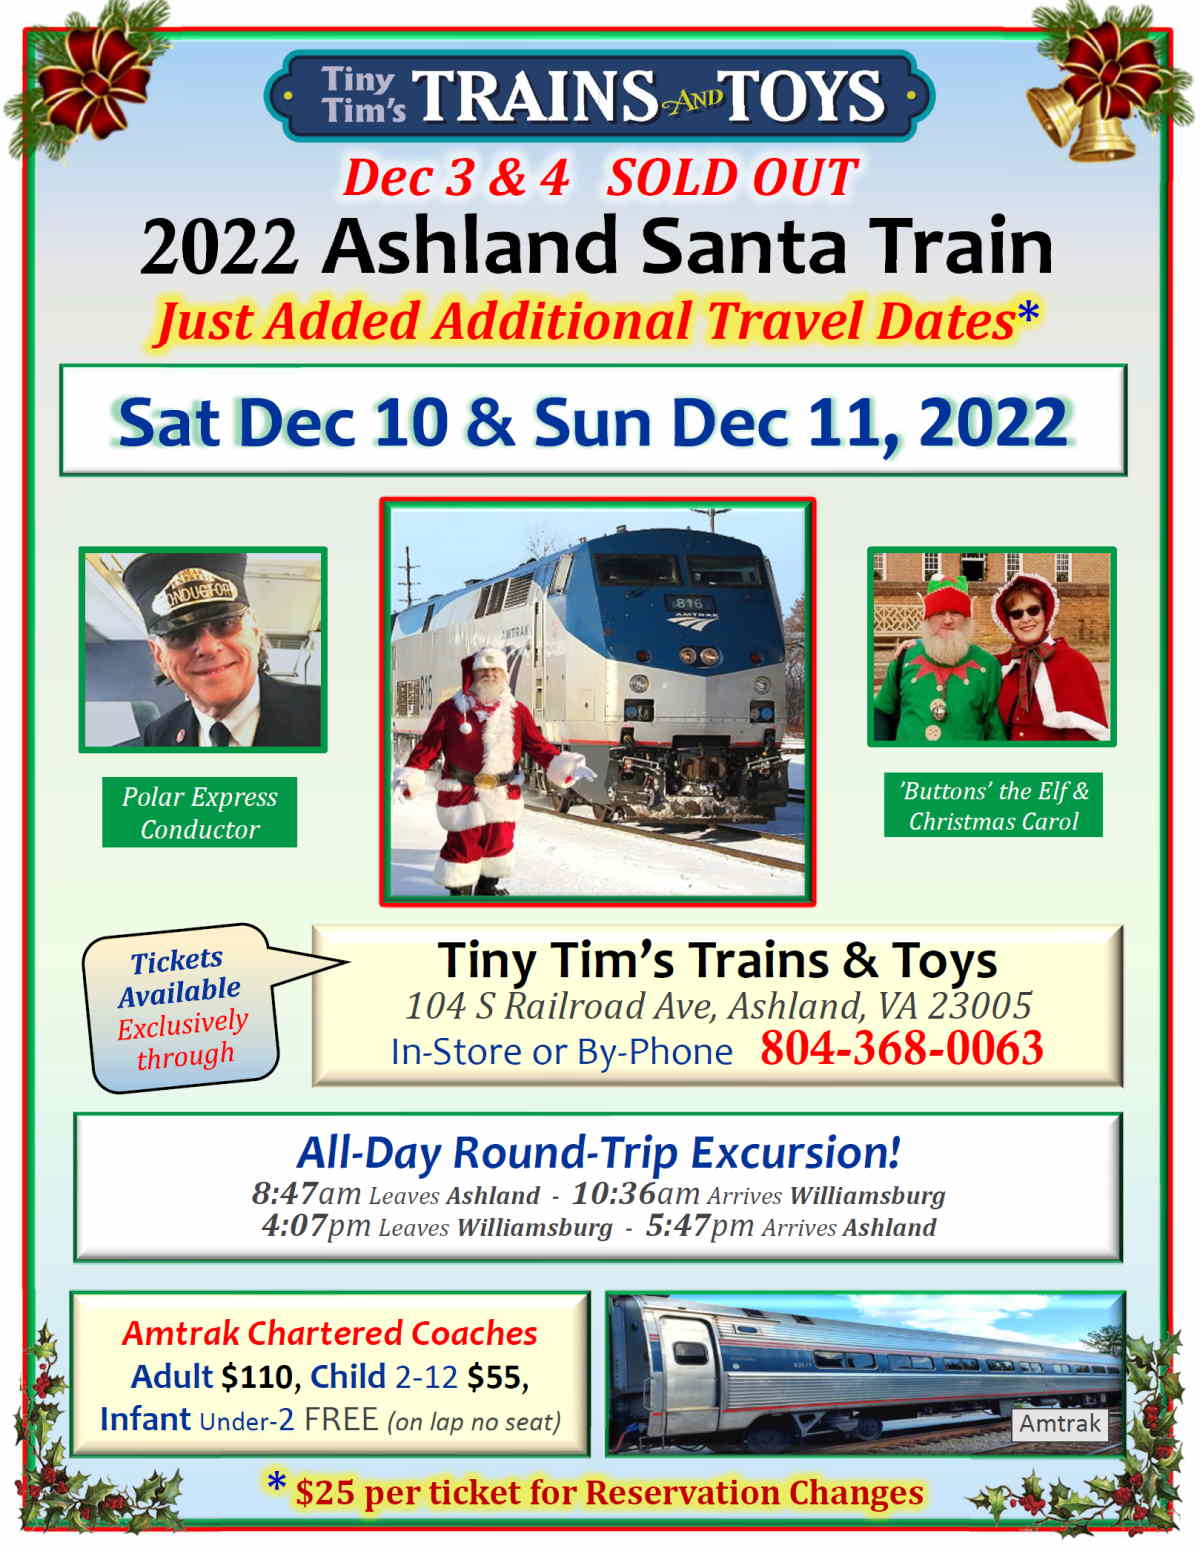 Tiny Tim 2022 Santa Train